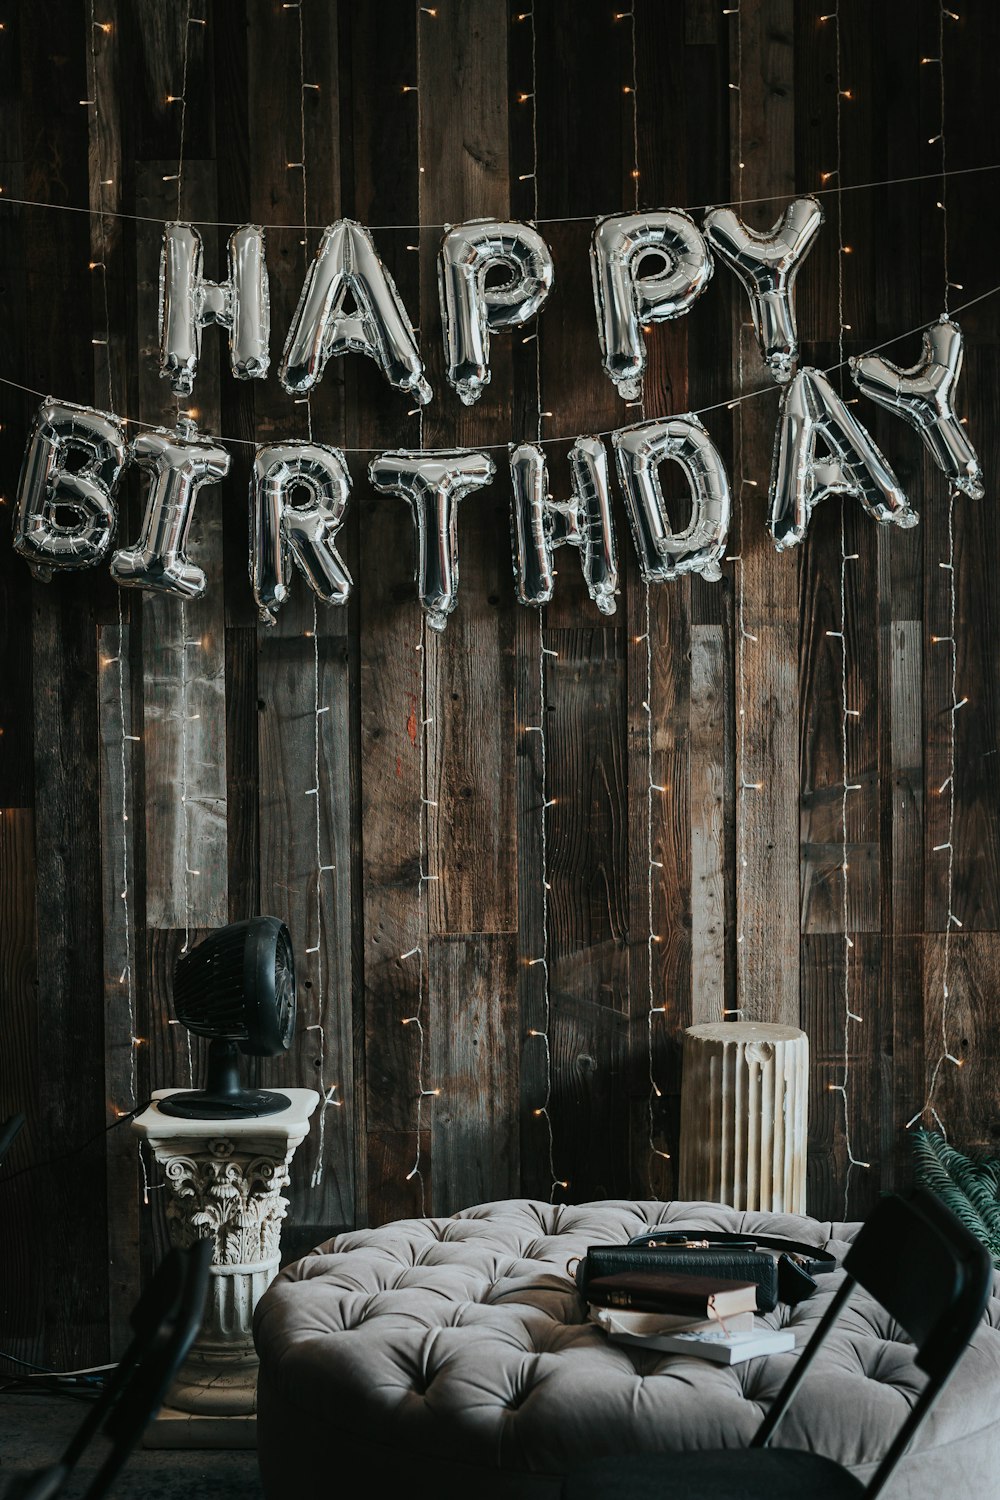 Tìm kiếm bộ sưu tập hình nền sinh nhật độc đáo để thêm độc đáo và sự lãng mạn cho bữa tiệc của bạn. Với các hình ảnh nghệ thuật tuyệt đẹp từ hoa, bánh kem và quà tặng, bạn sẽ chắc chắn tìm được hình nền hoàn hảo cho ngày sinh nhật của mình để tạo ra những kỷ niệm đáng nhớ.